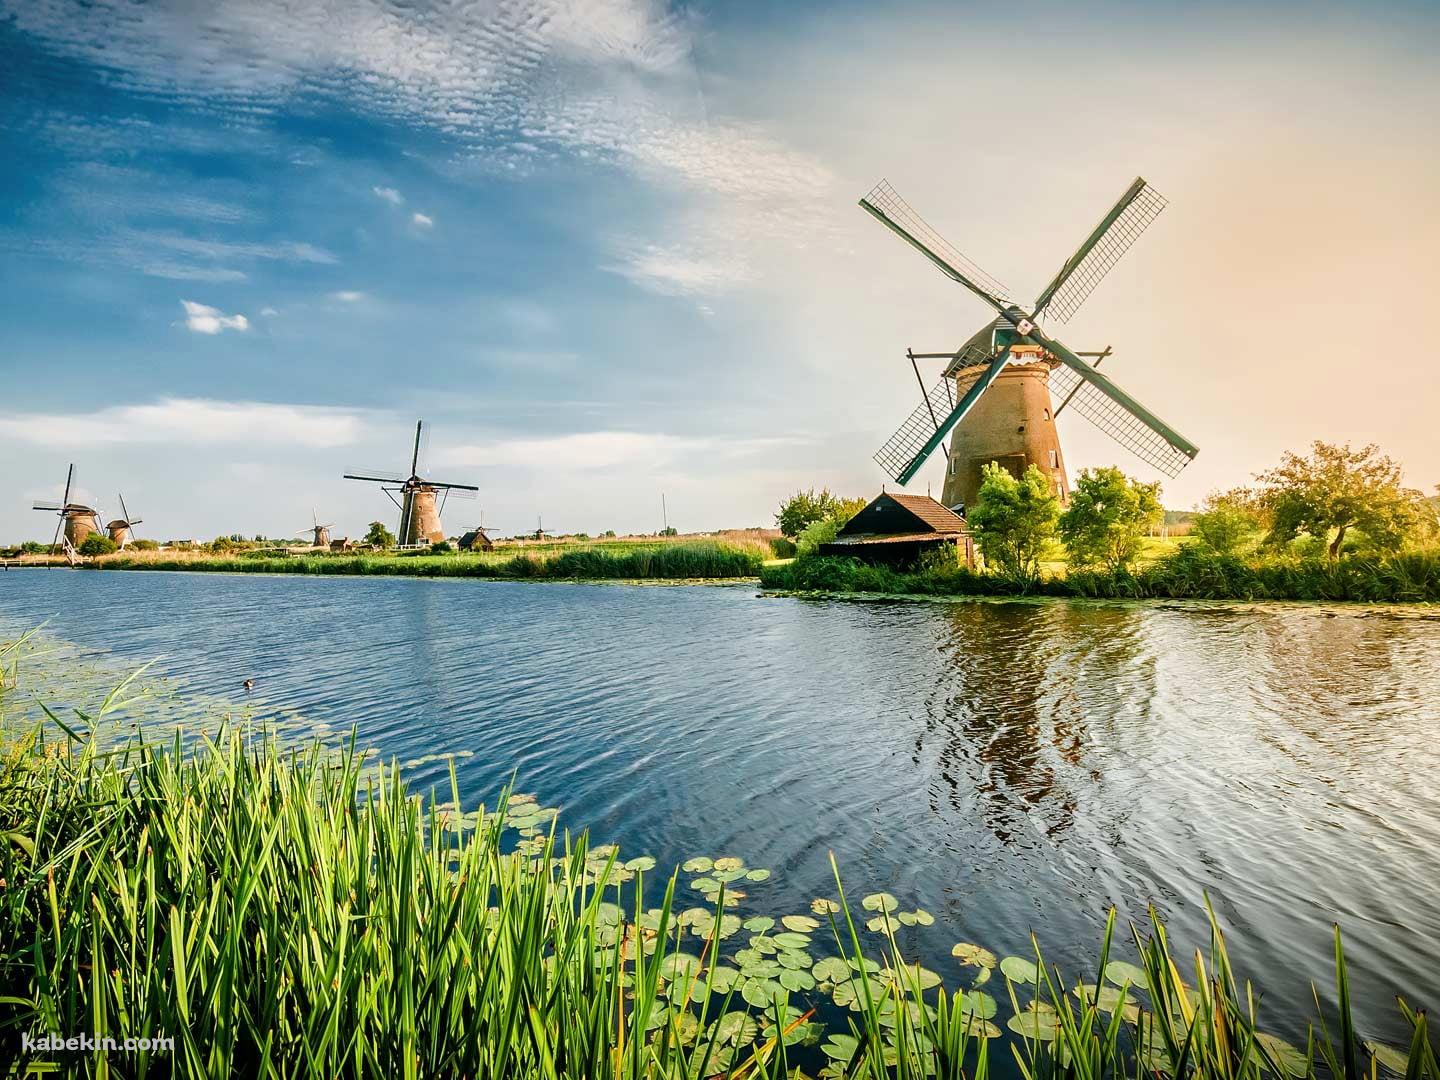 オランダ ロッテルダム 風車の壁紙(1440px x 1080px) 高画質 PC・デスクトップ用